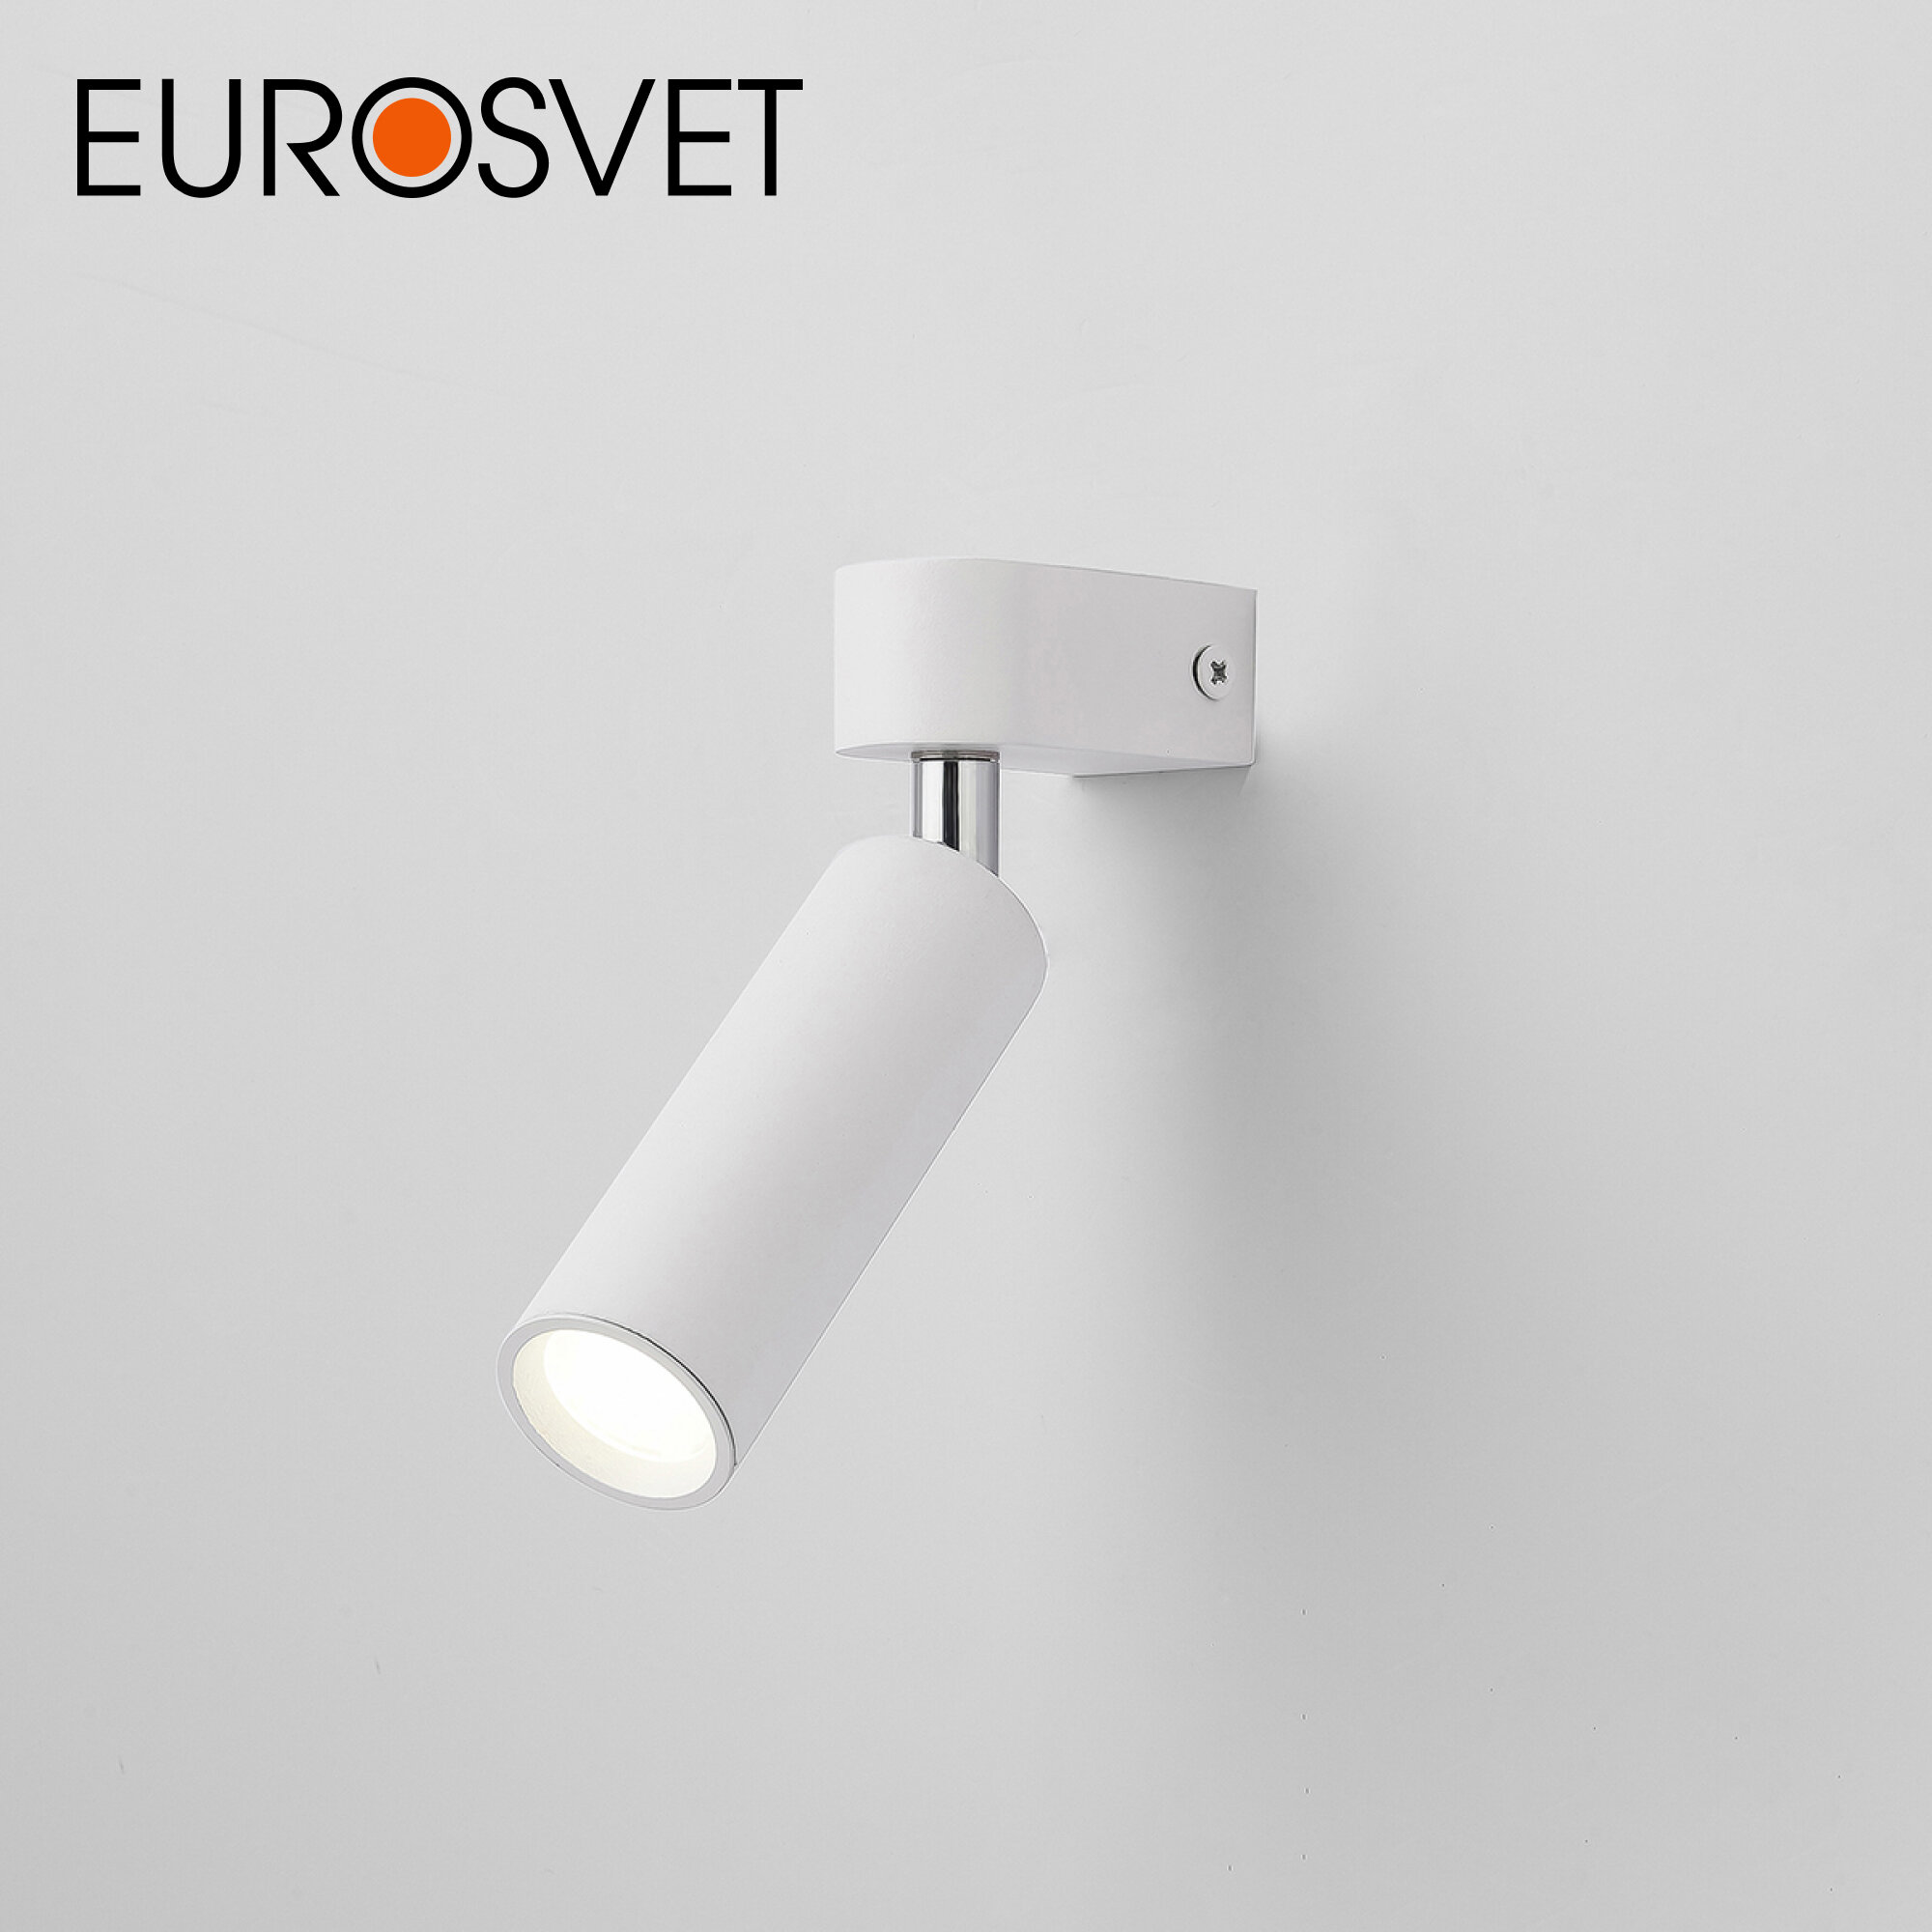 Спот / Настенный светодиодный светильник с поворотным плафоном Eurosvet Pitch 20143/1 LED, 3 Вт, 4200 К, цвет белый, IP20